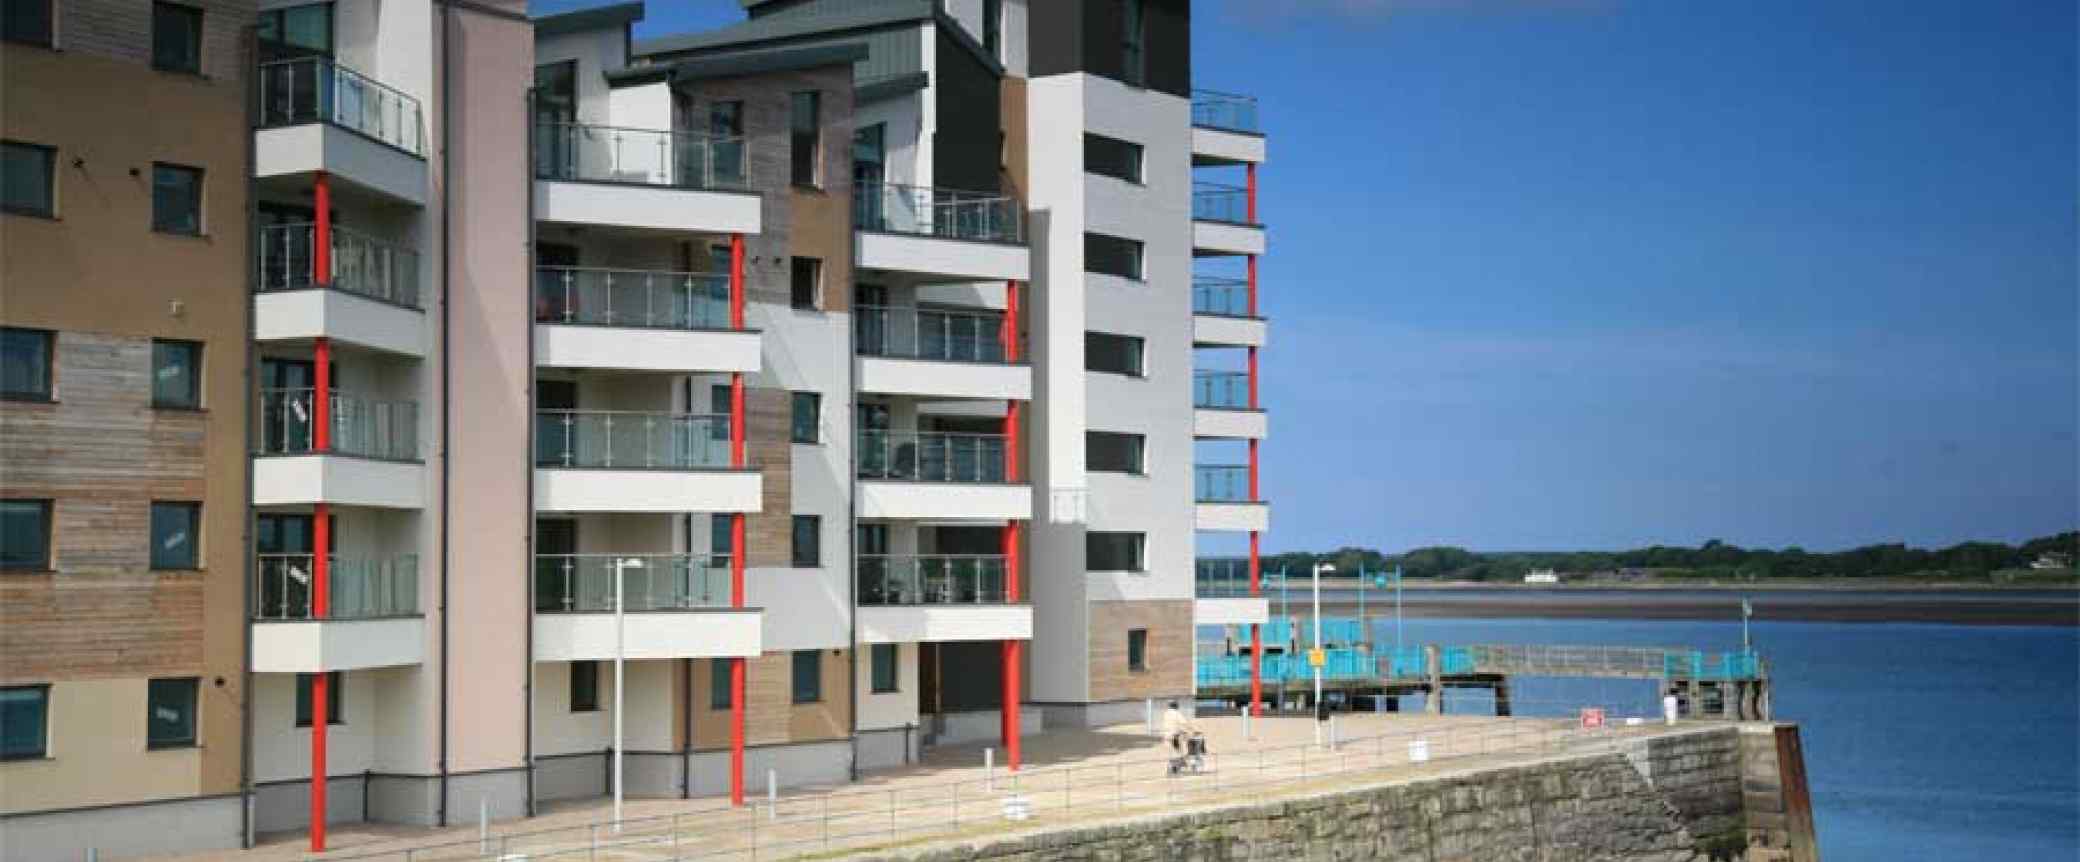 Apartment Scheme - Victoria Dock